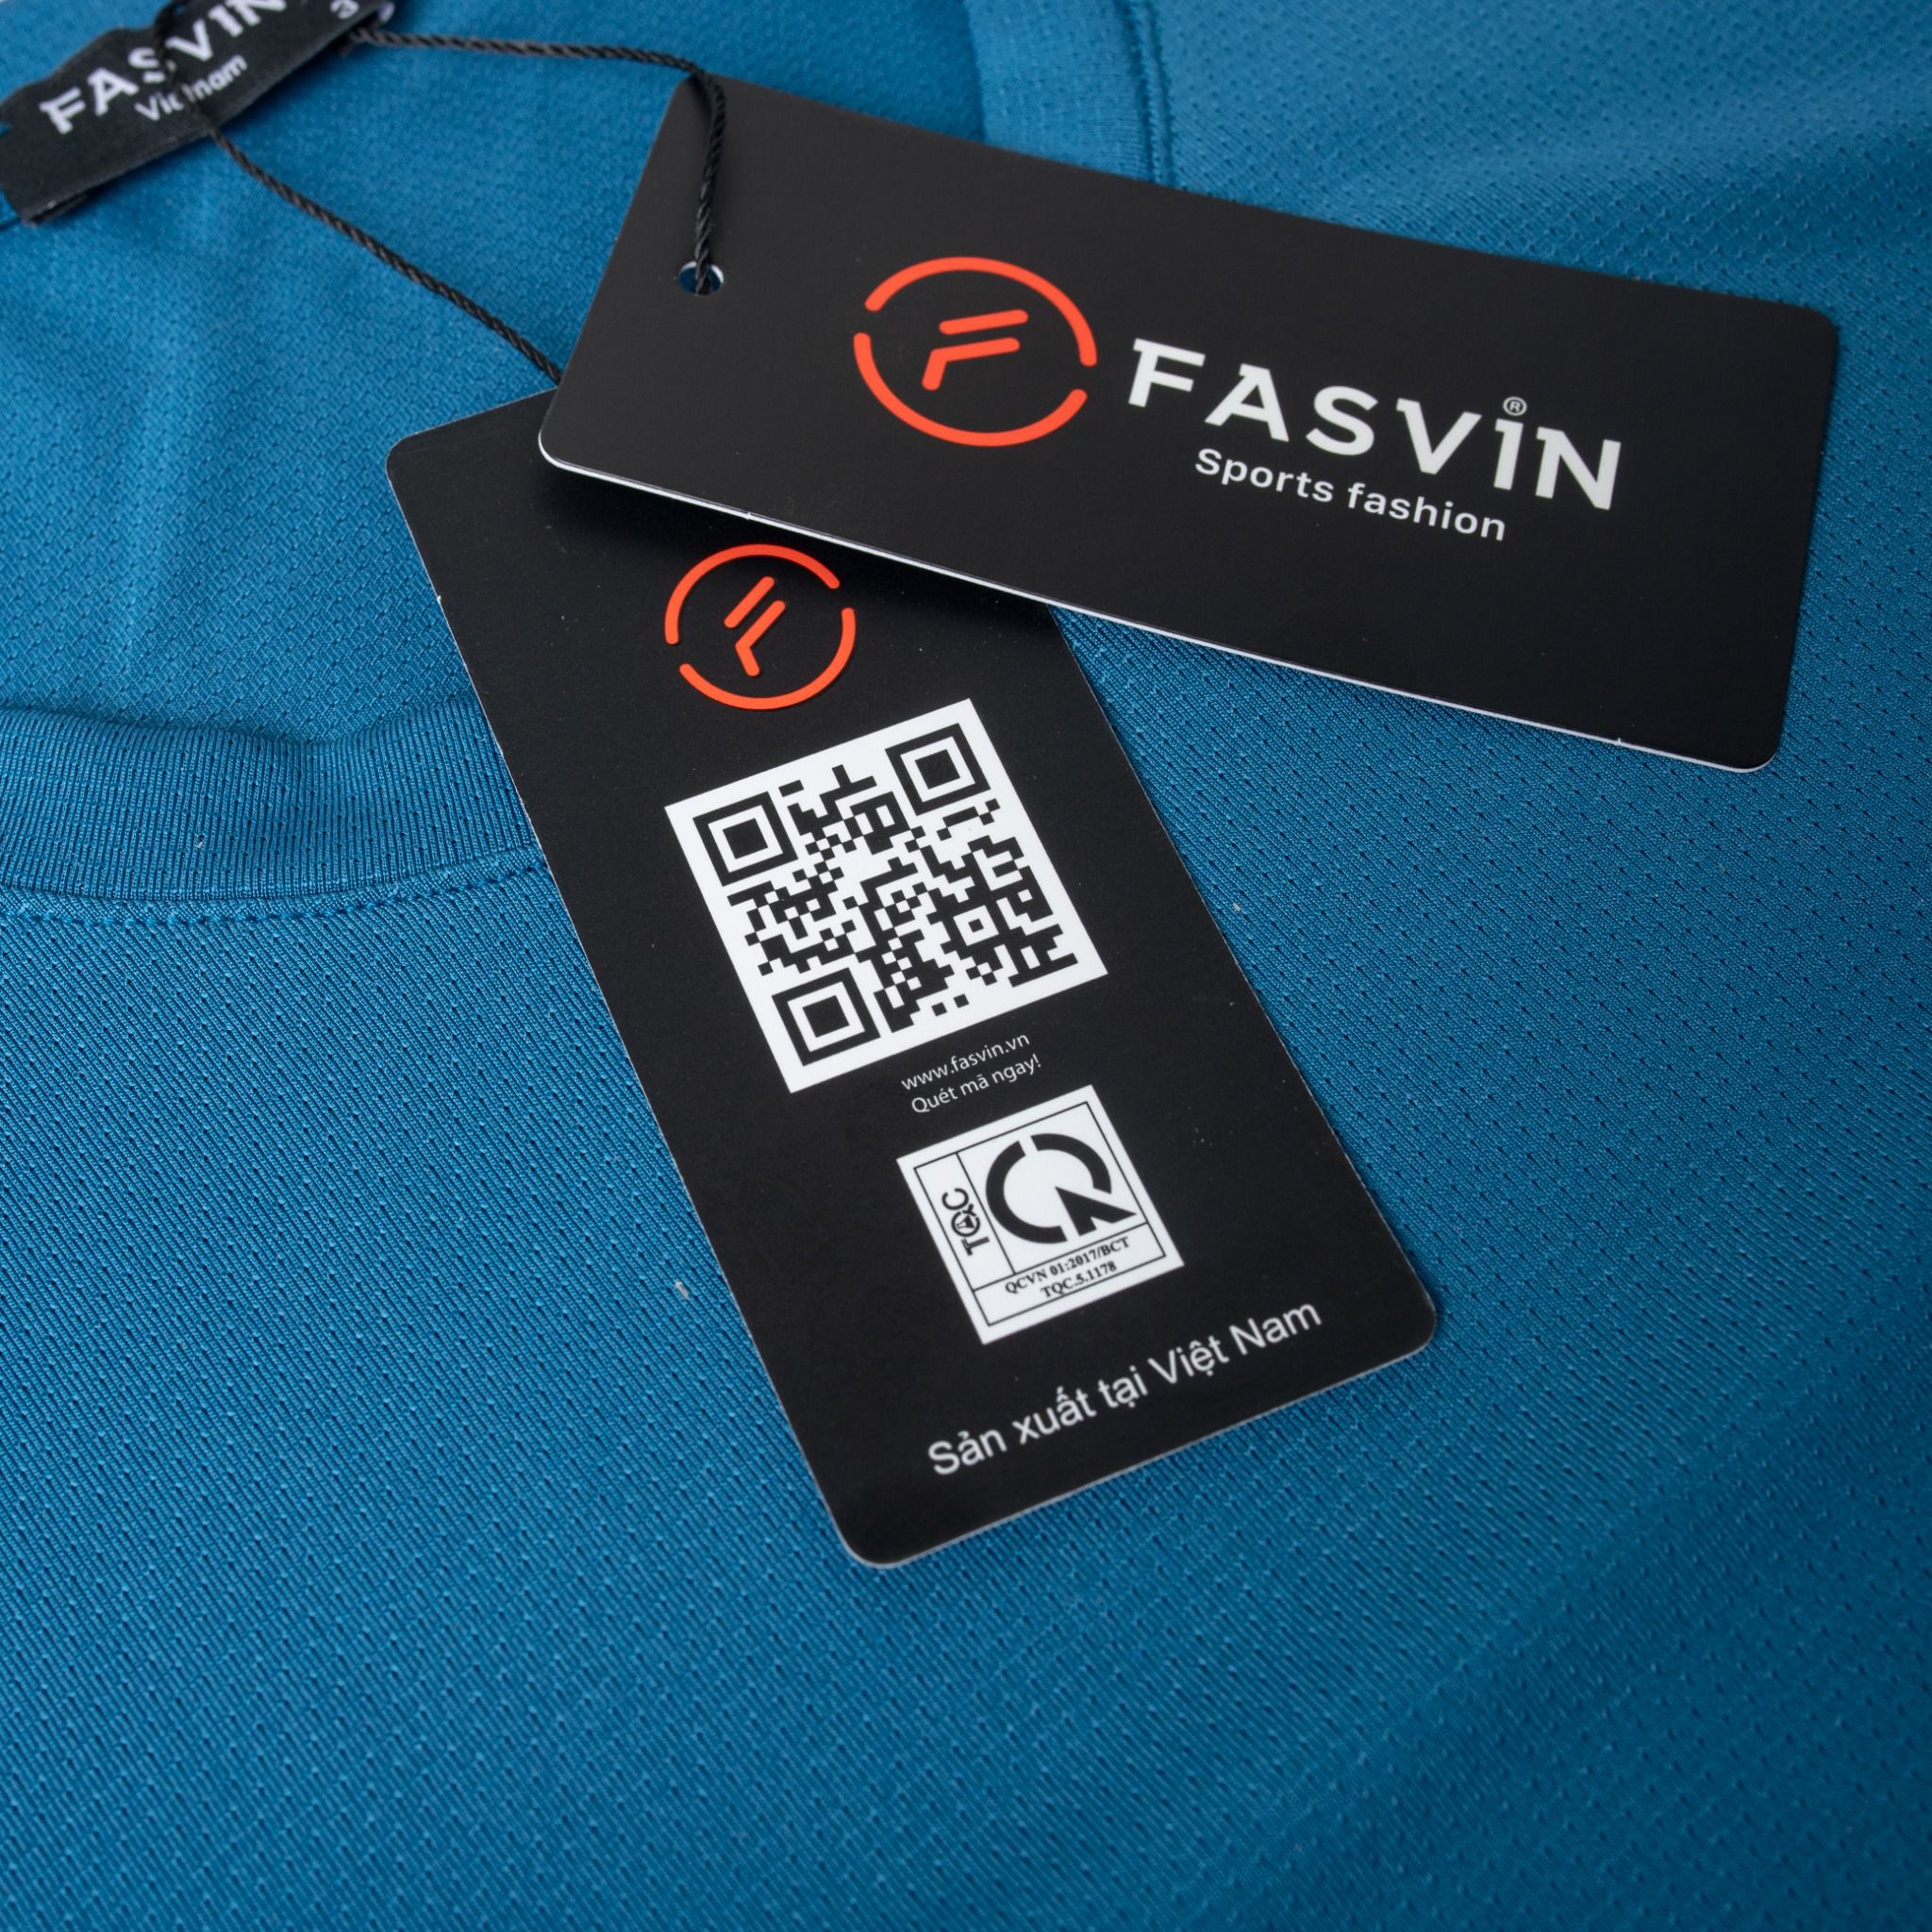  Áo thun dài tay nam Fasvin AD23596 chất vải thể thao mềm mại co giãn hàng đẹp chính hãng 